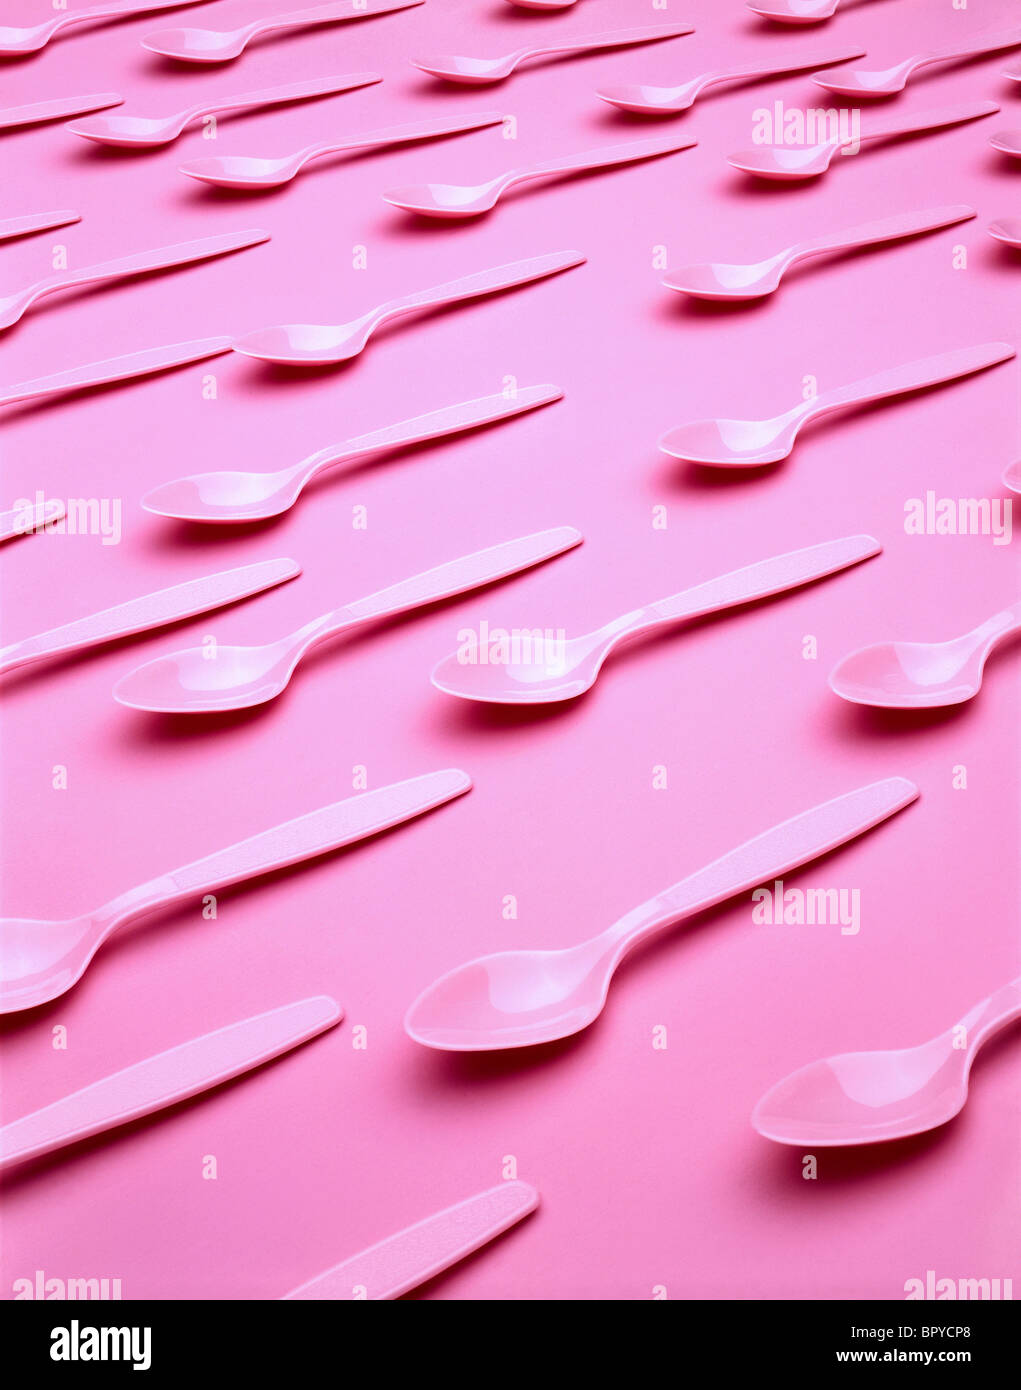 Cuillères en plastique rose sur fond rose Banque D'Images